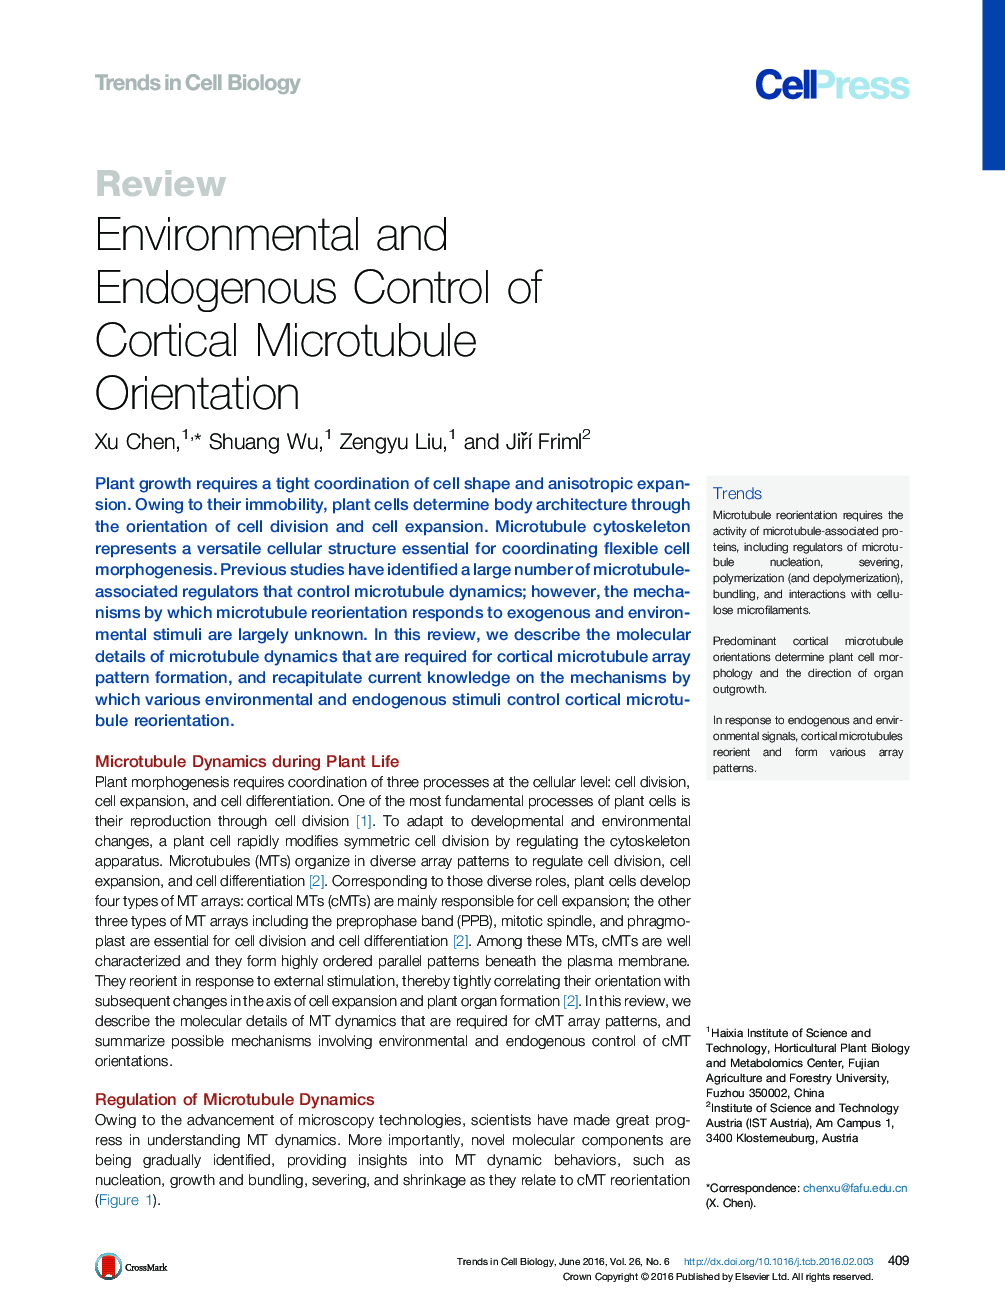 کنترل زیست محیطی و محیط زیست در جهت گیری میکرو توبول های قشر 